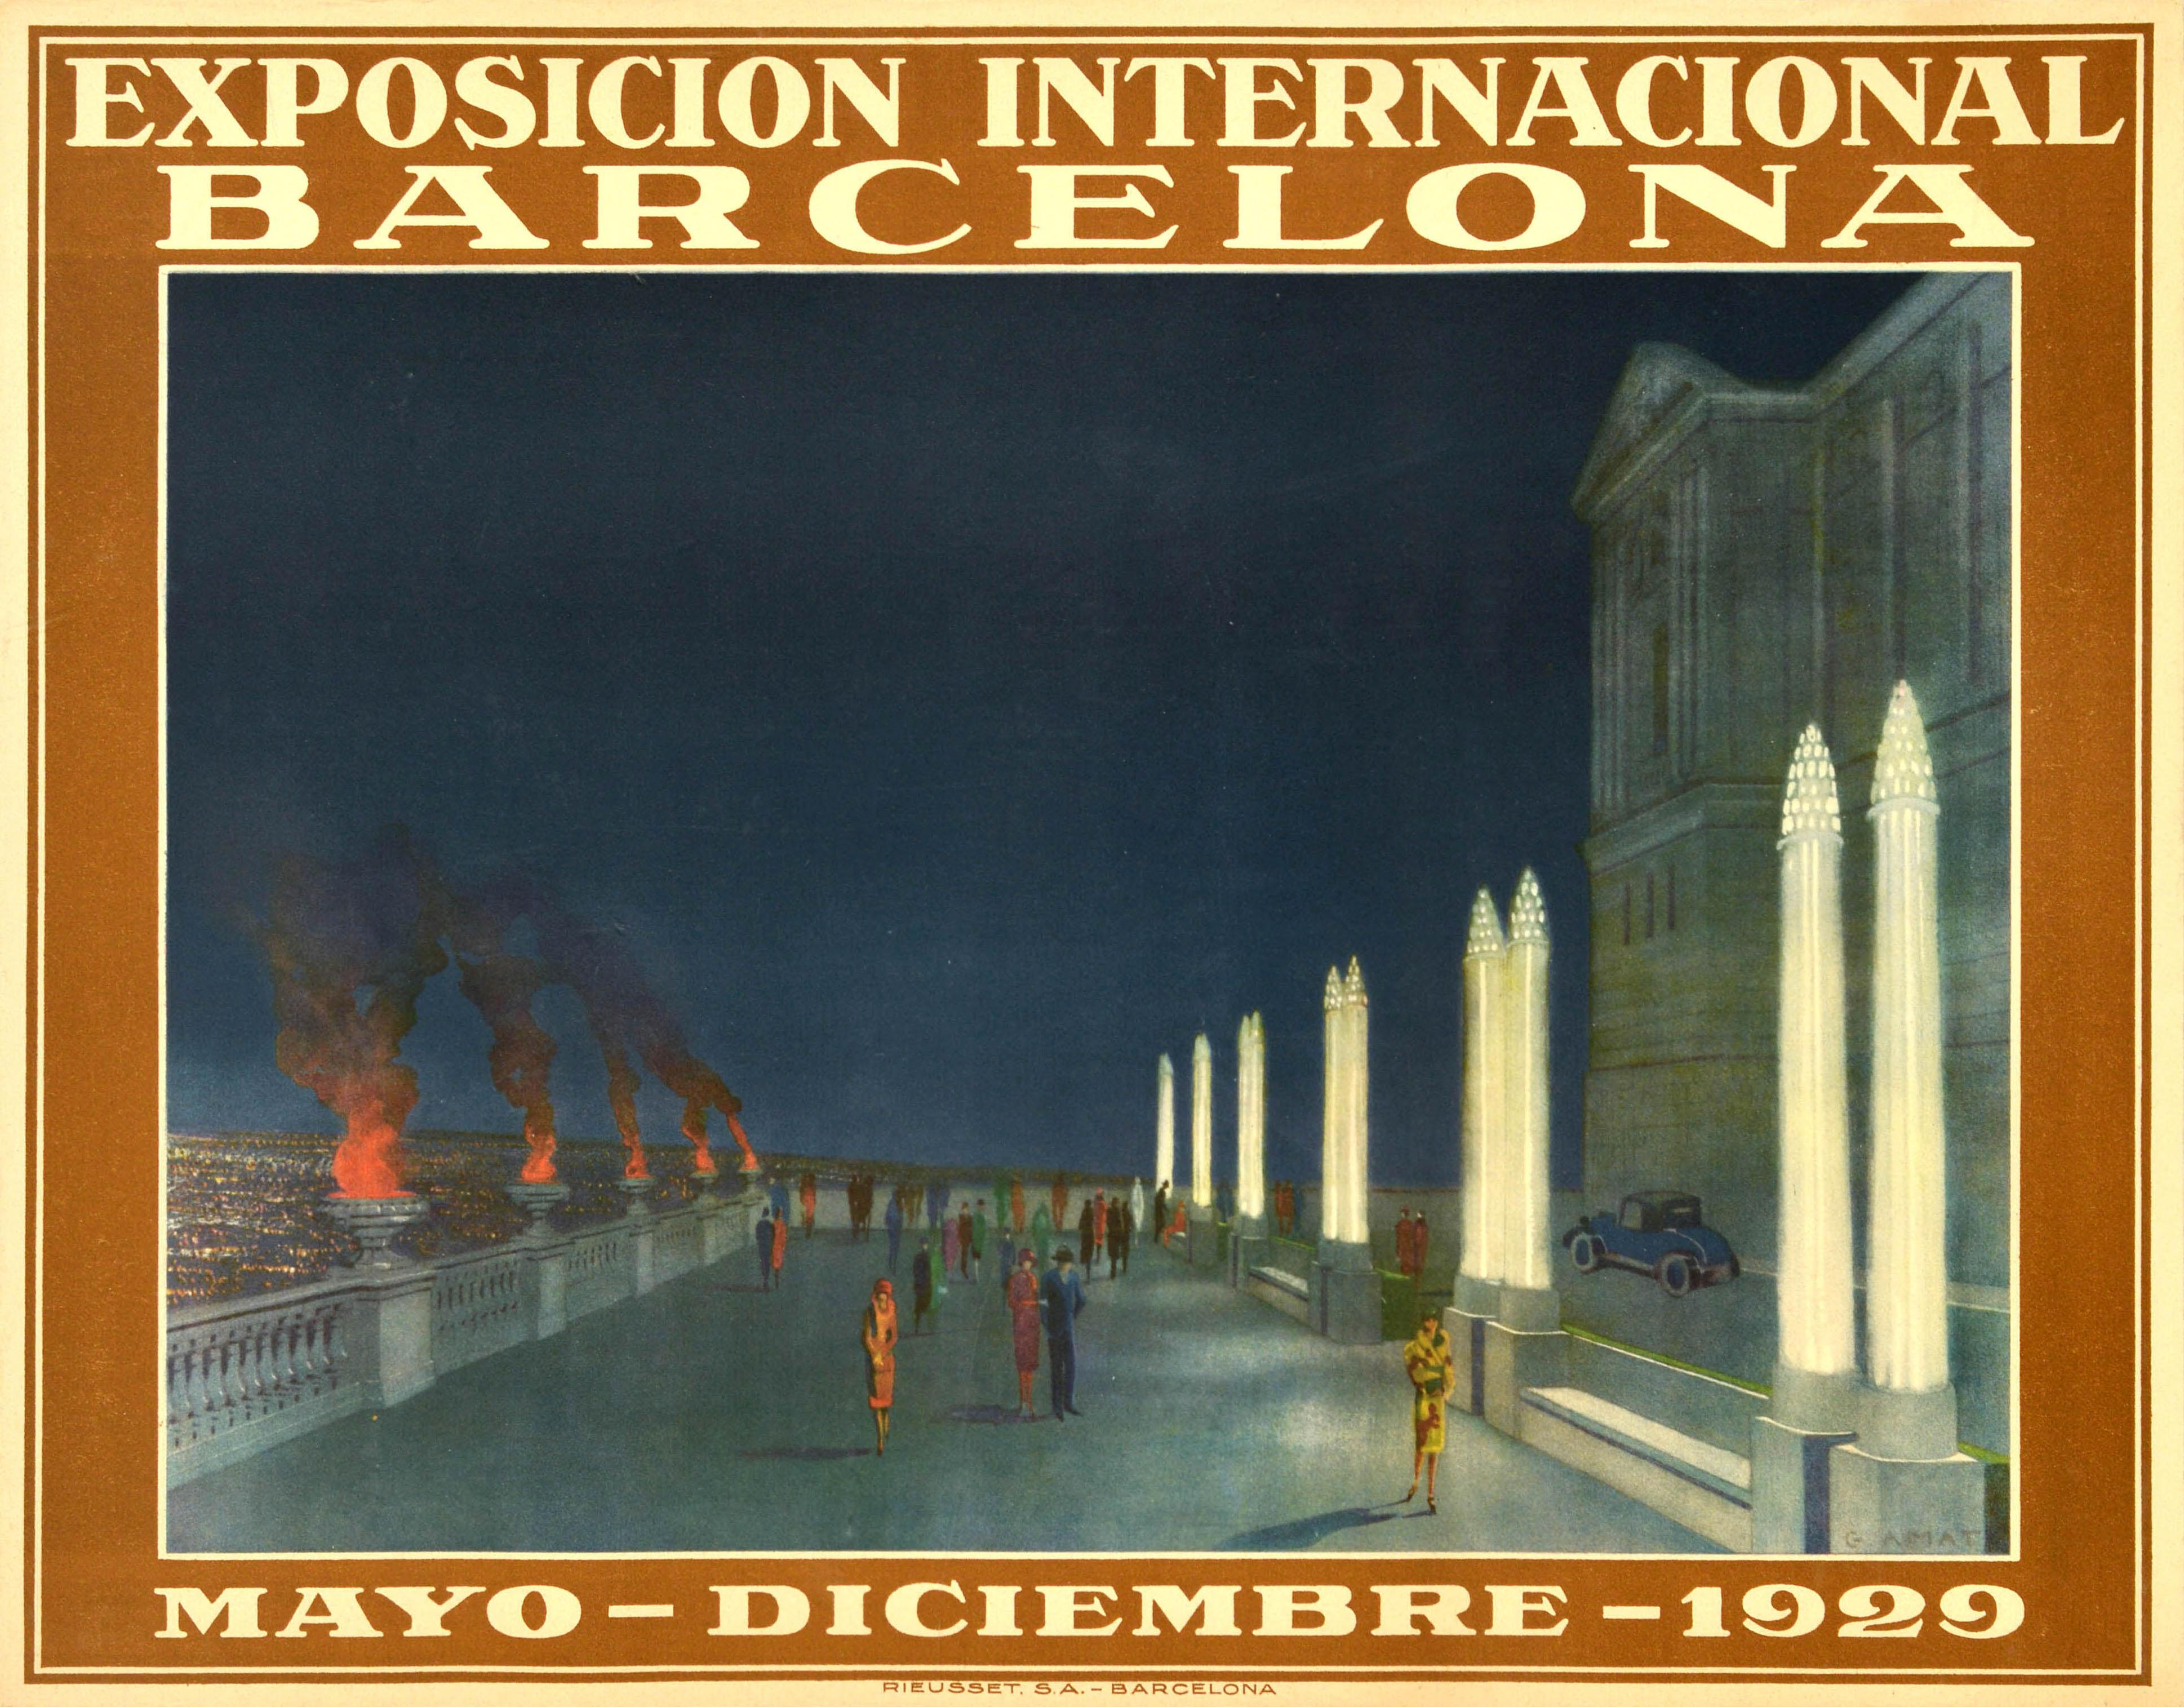 Print Unknown - Affiche publicitaire originale de l'Exposition internationale de Barcelone de 1929